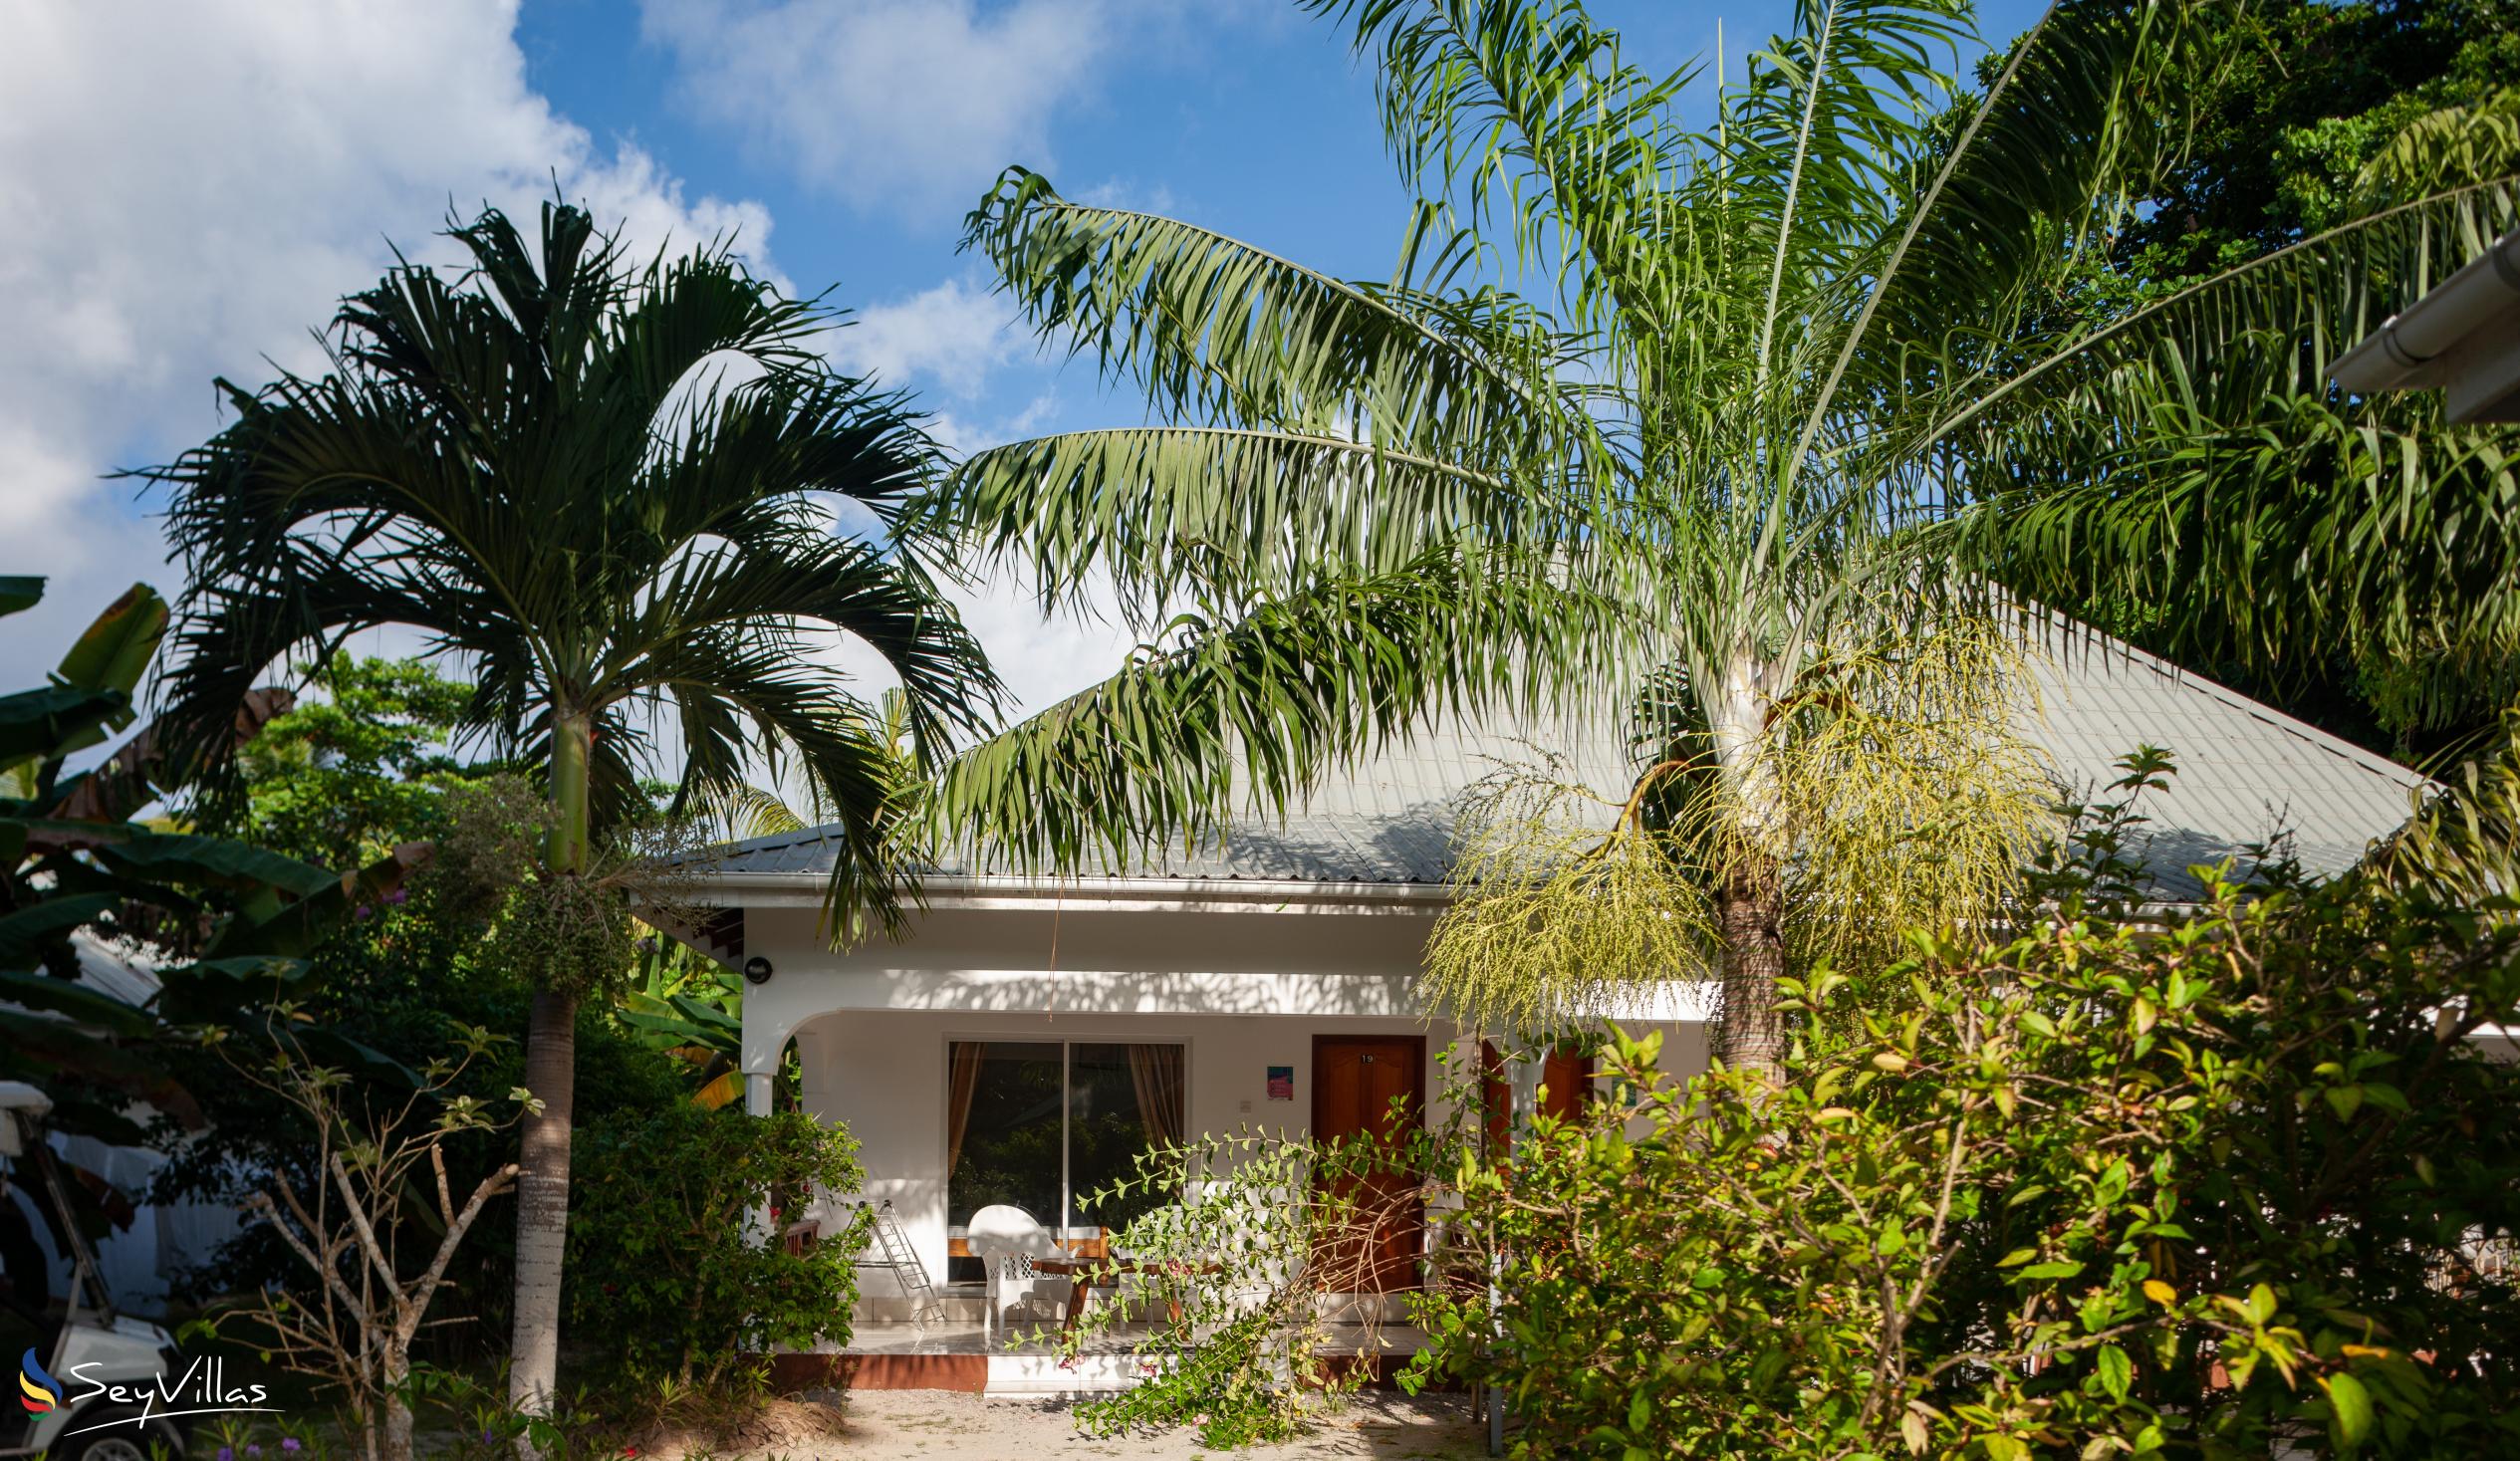 Foto 5: Villa Veuve - Aussenbereich - La Digue (Seychellen)